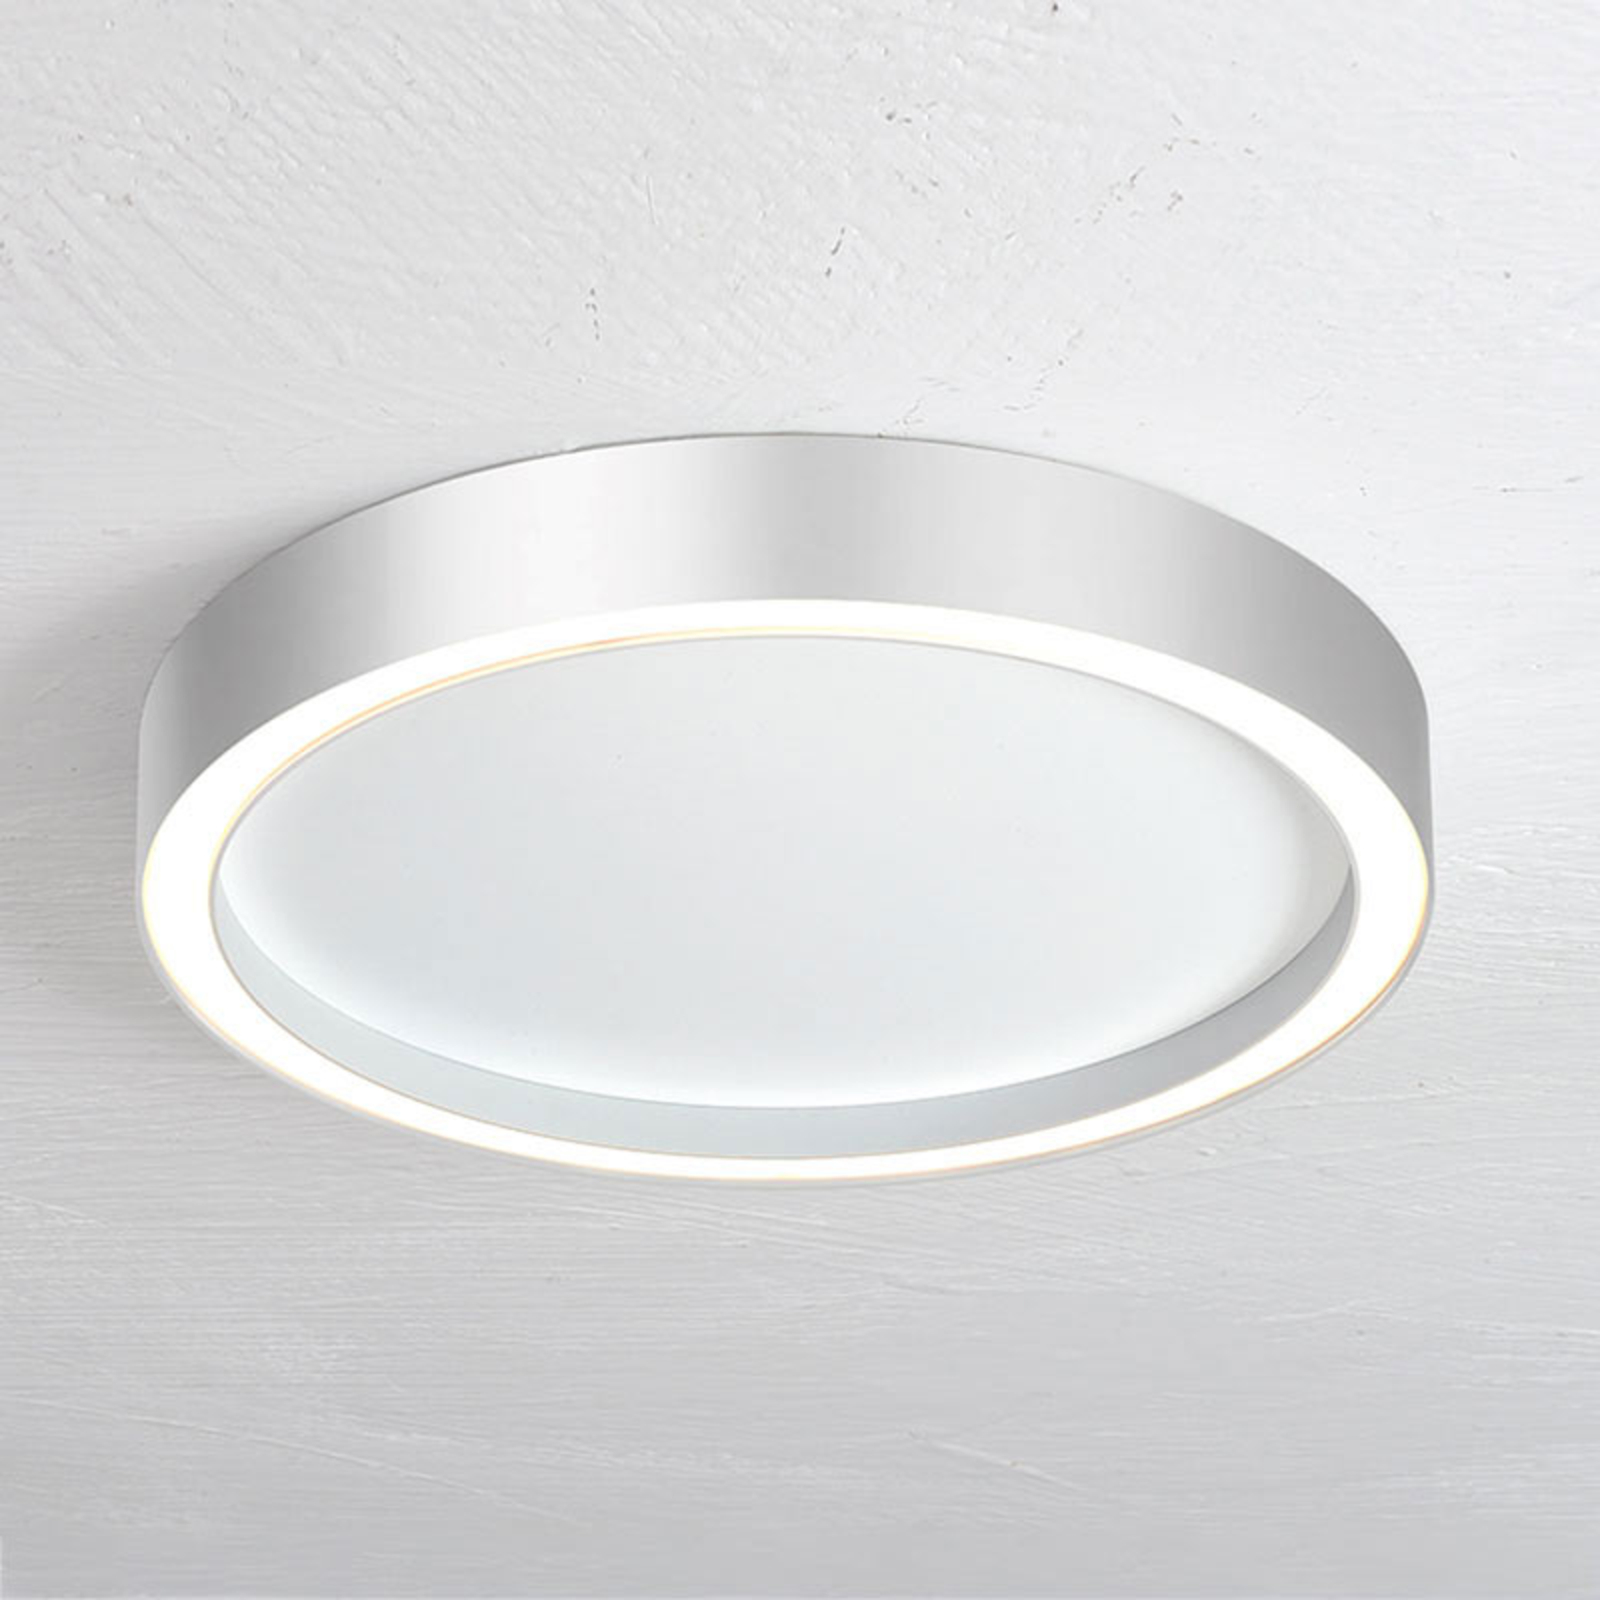 Bopp Aura LED ceiling light Ø 55cm white/aluminium